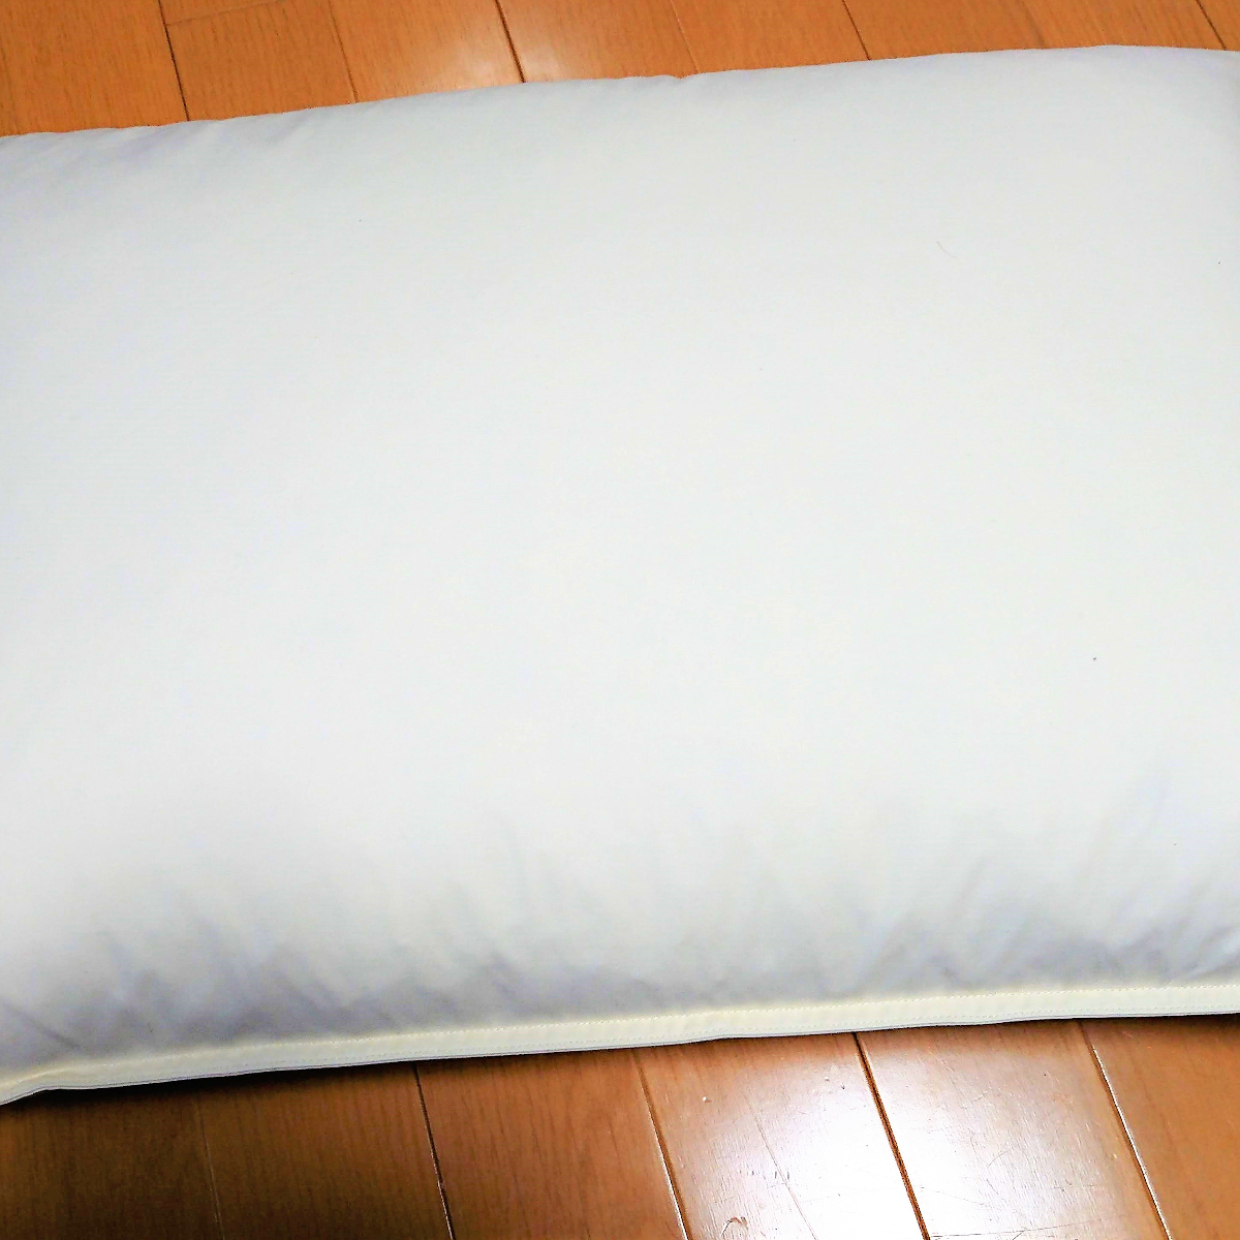  【ニトリ】冷感素材の「ぴったりニット枕カバー」が超快適♪これからの季節に役立ちそう！ 